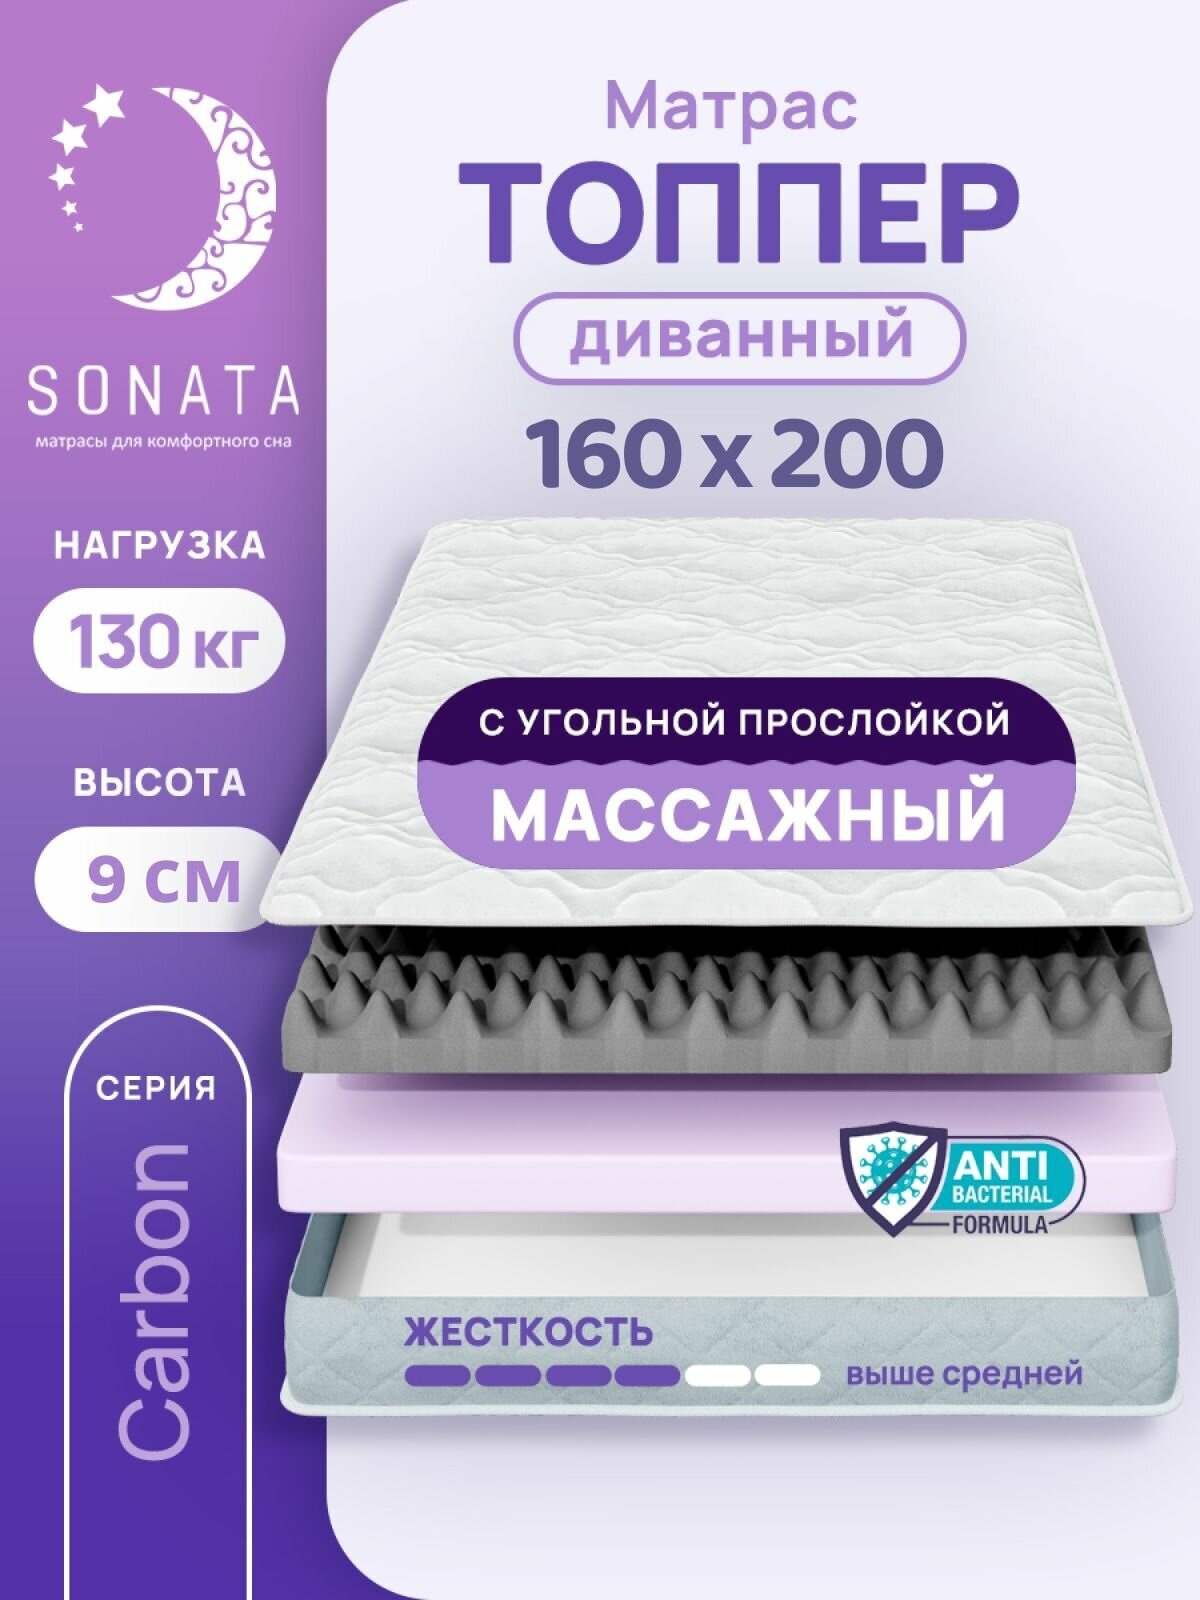 Топпер матрас 160х200 см SONATA, ортопедический, беспружинный, двуспальный, тонкий матрац для дивана, кровати, высота 9 см с массажным эффектом